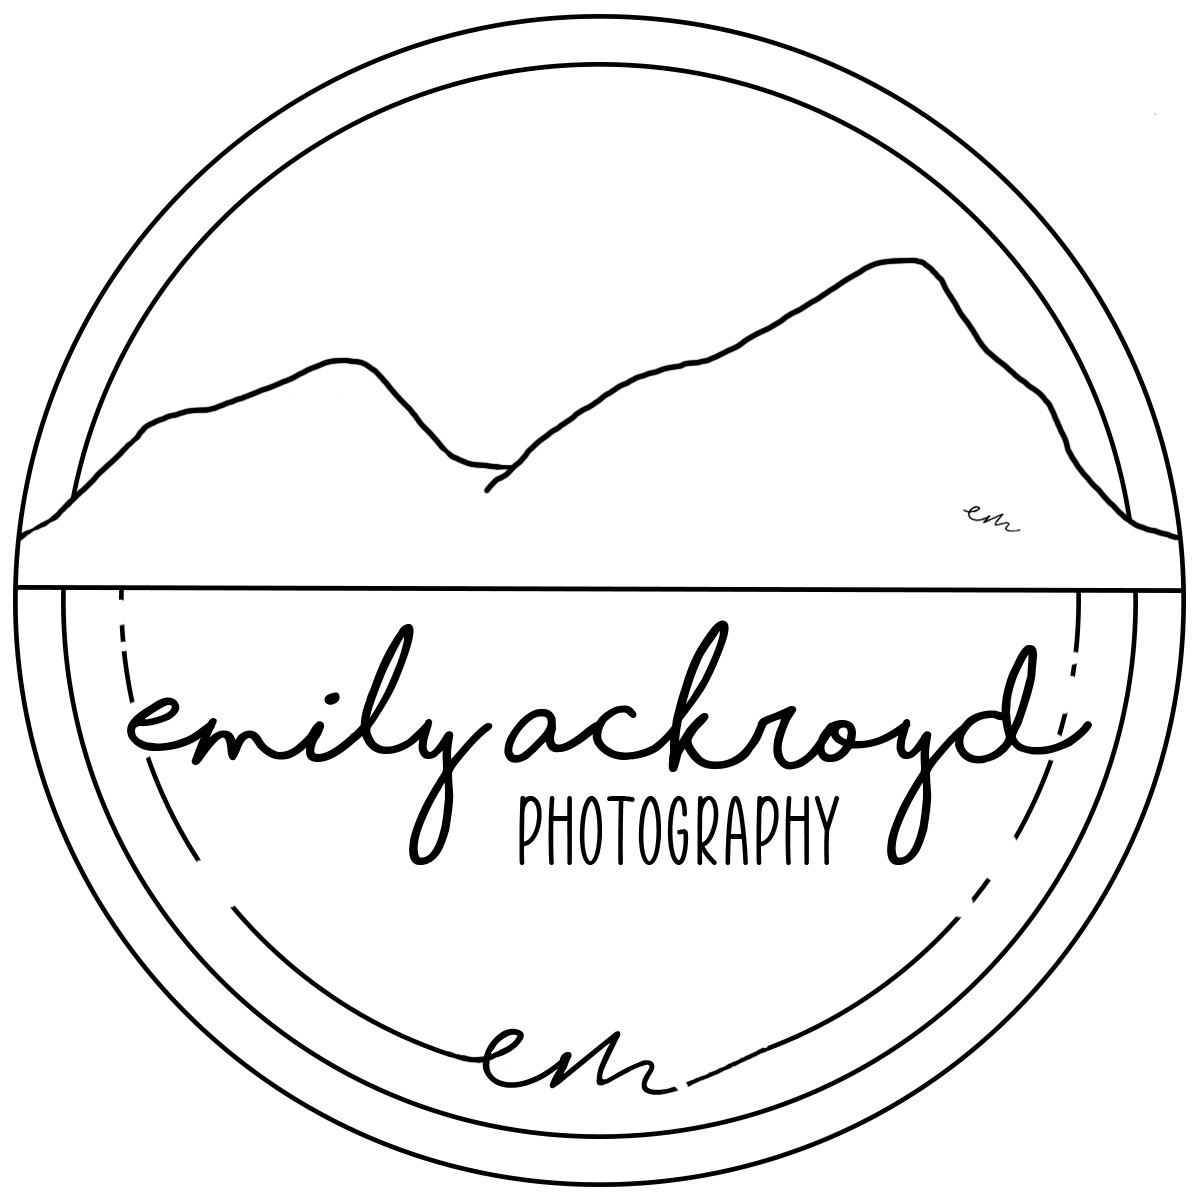 Emily Ackroyd Photography